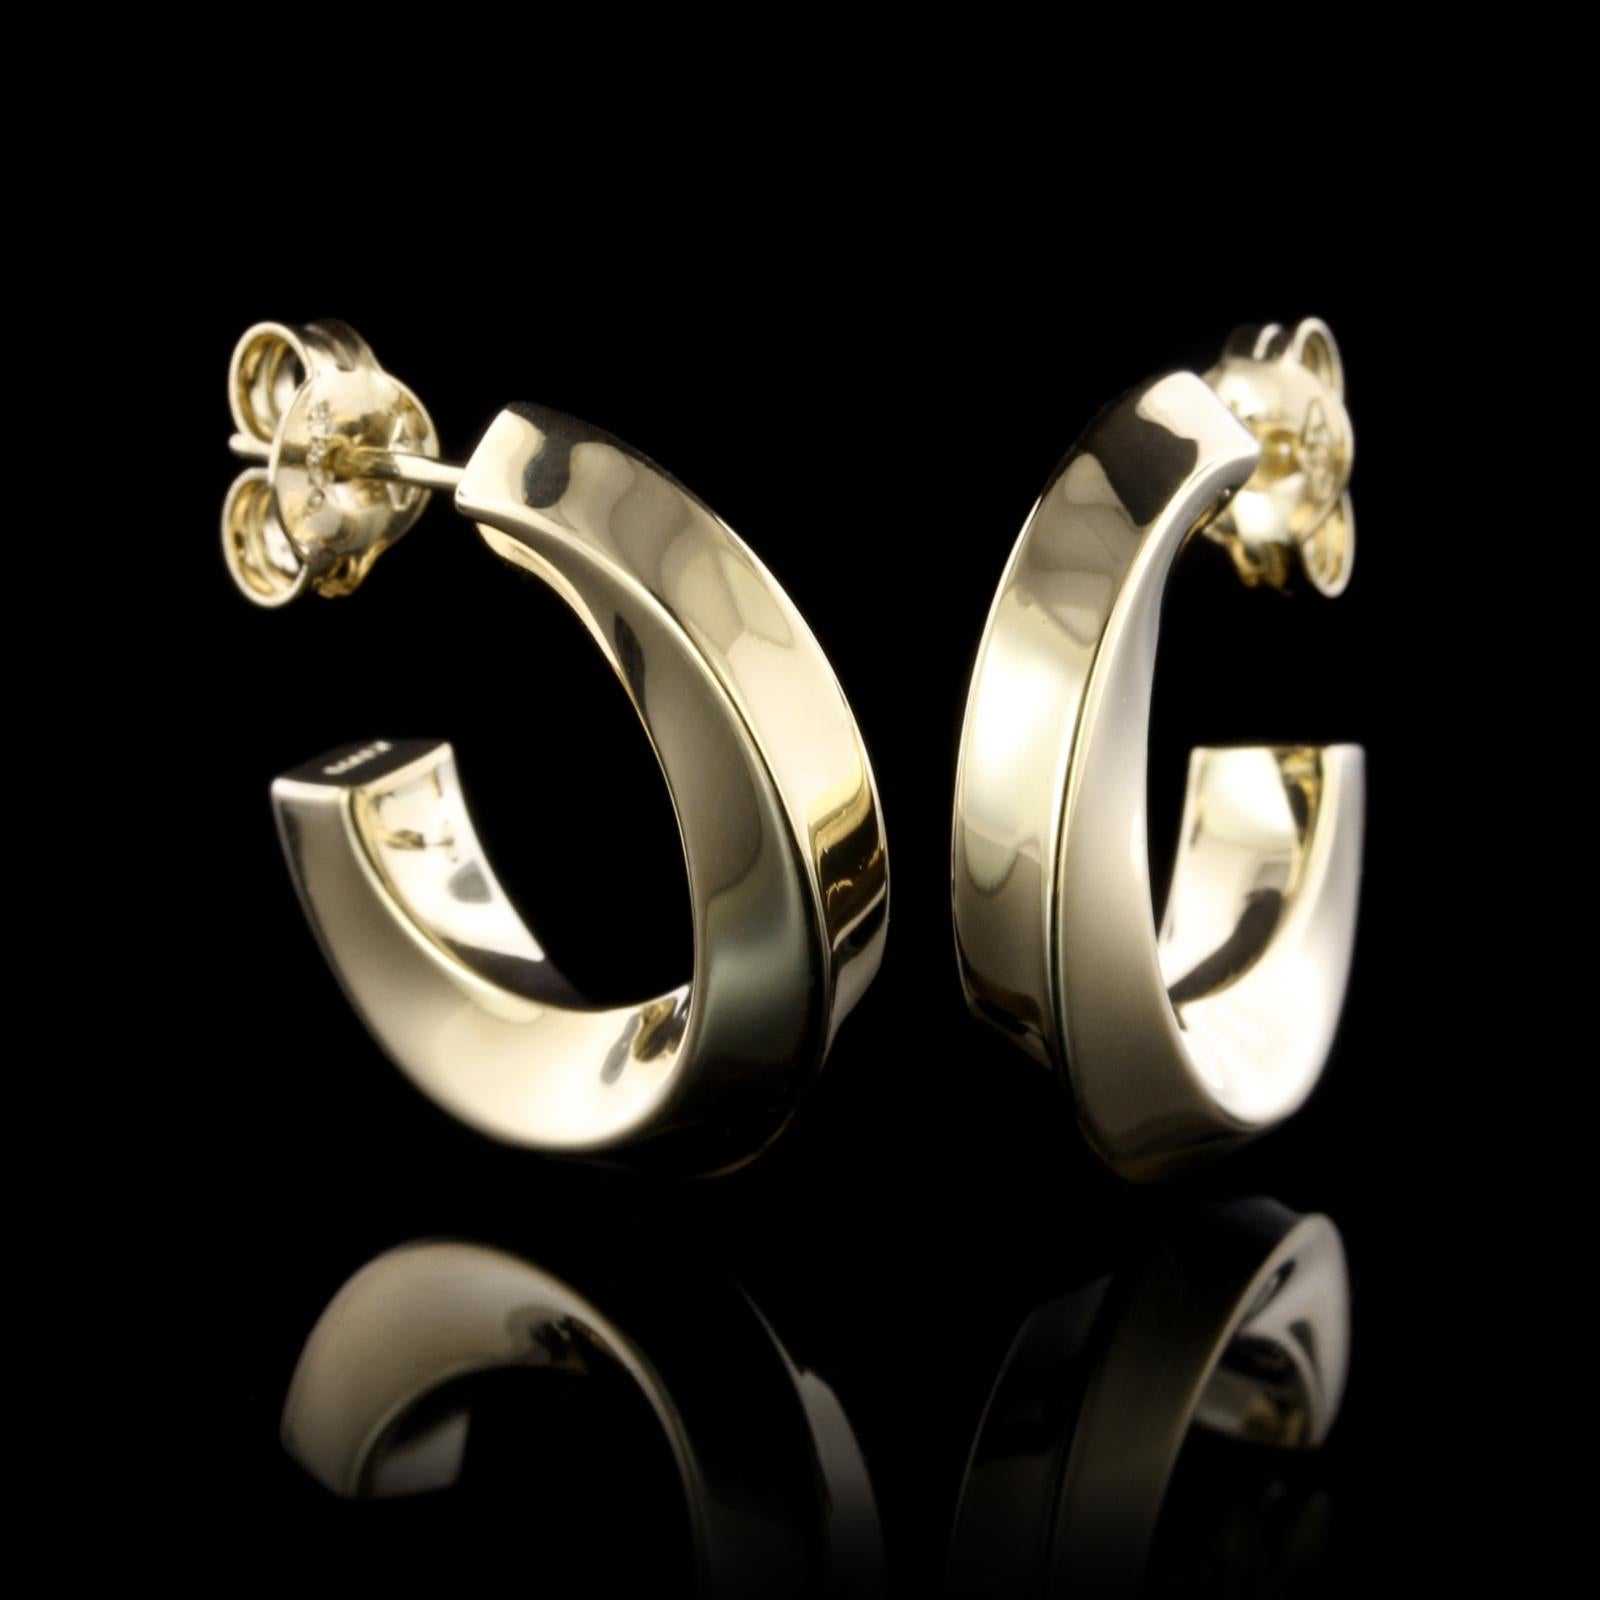 Tiffany & Co. 18K Yellow Gold Twist Hoop Earrings. Diameter 3/4